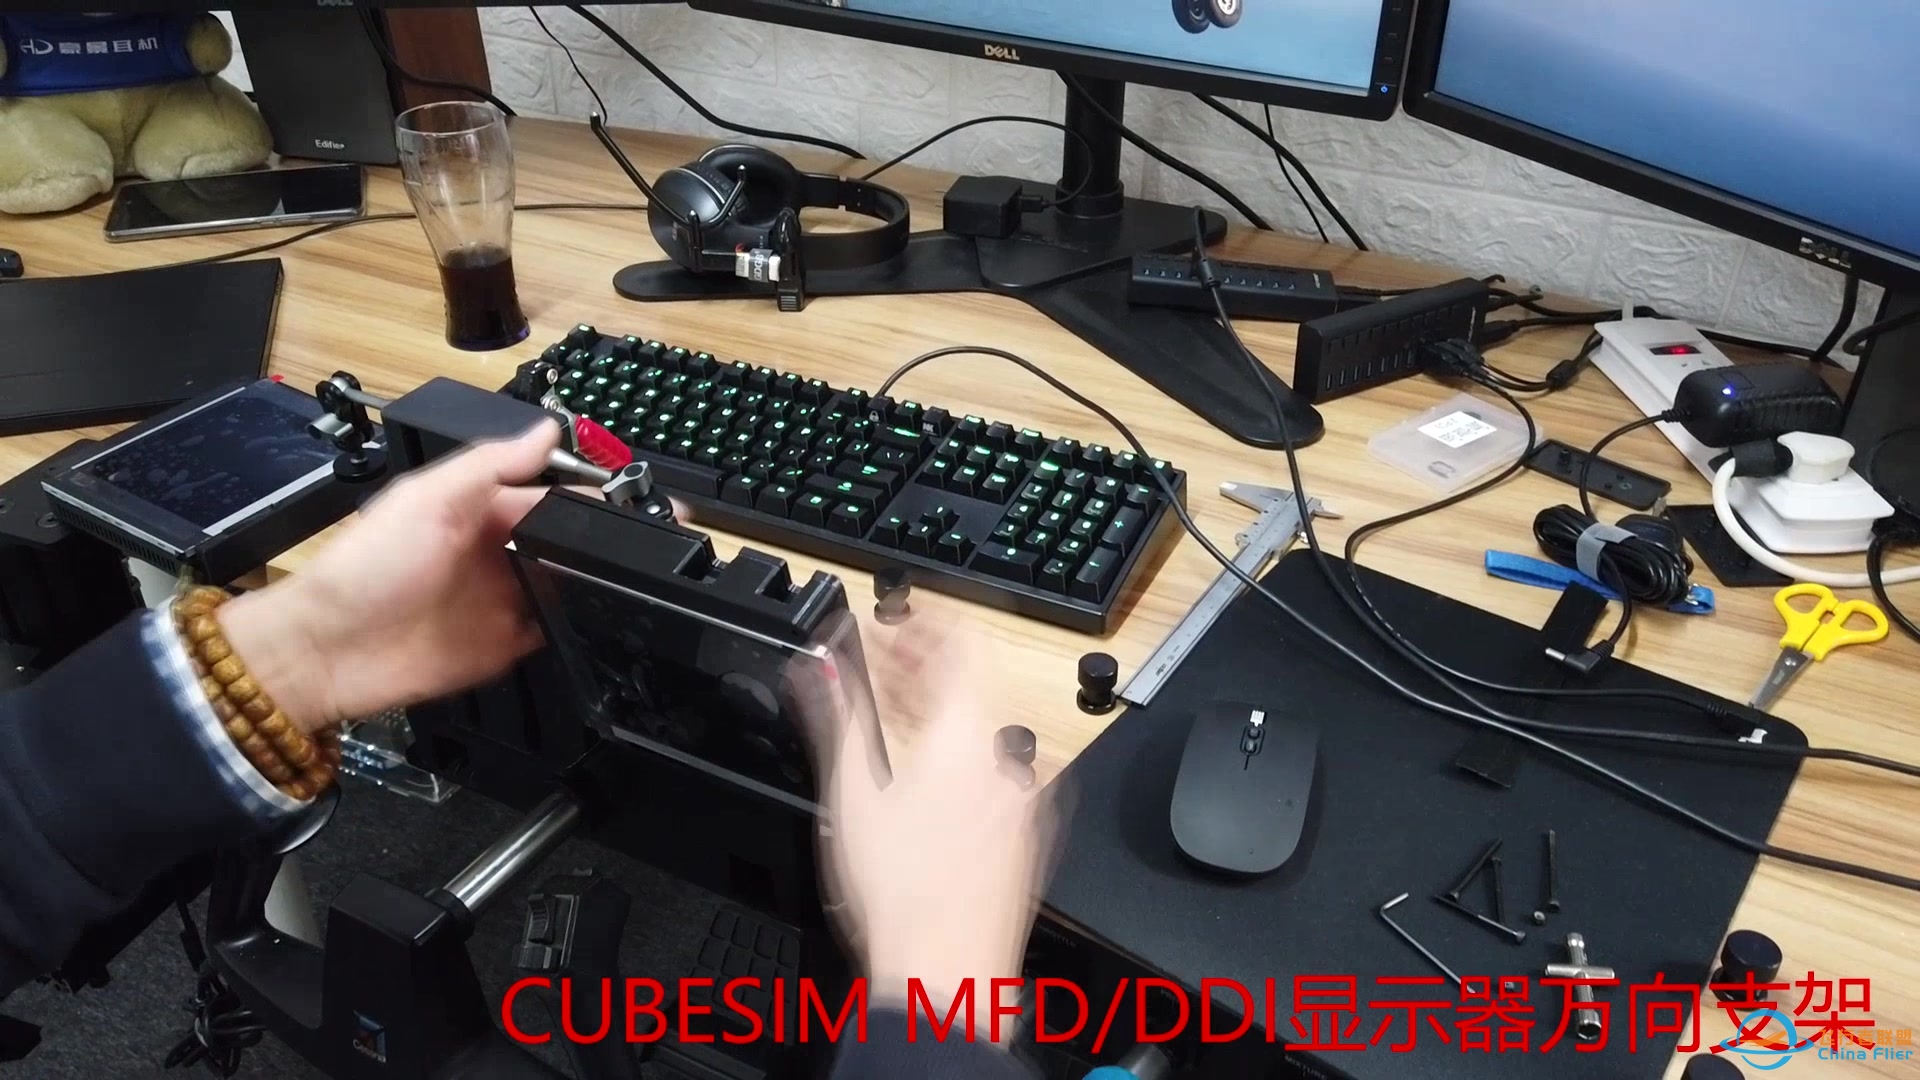 CUBESIM 飞行摇杆&amp;amp;MFD/DDI显示器 桌面支架-9561 